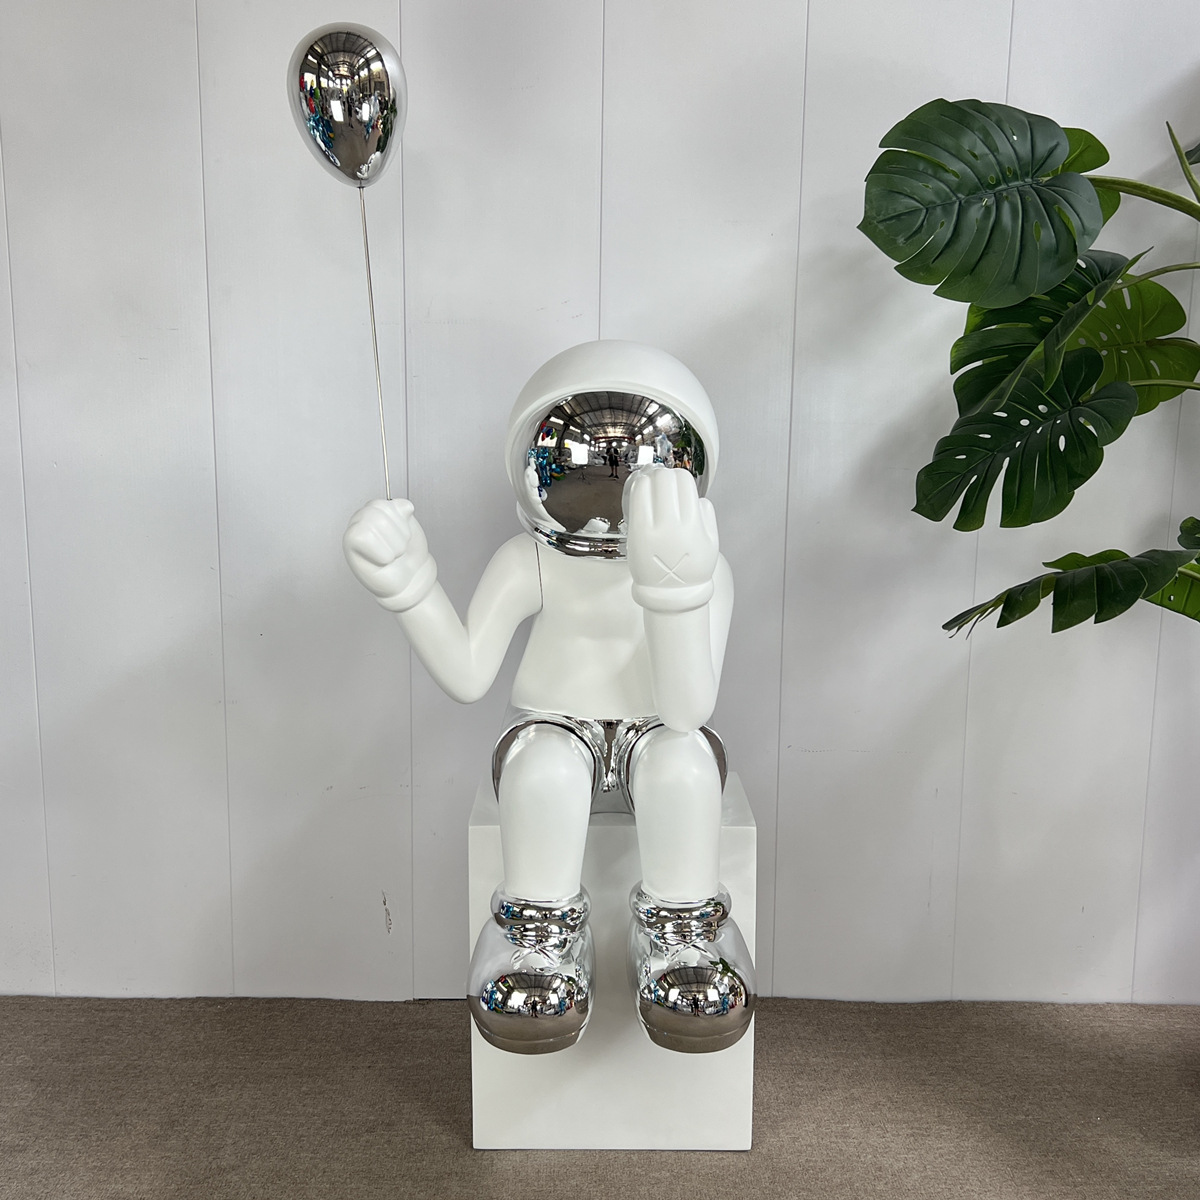 太空气球kaws雕塑暴力熊电镀大模型玩偶公仔摆件现代简约商铺装饰